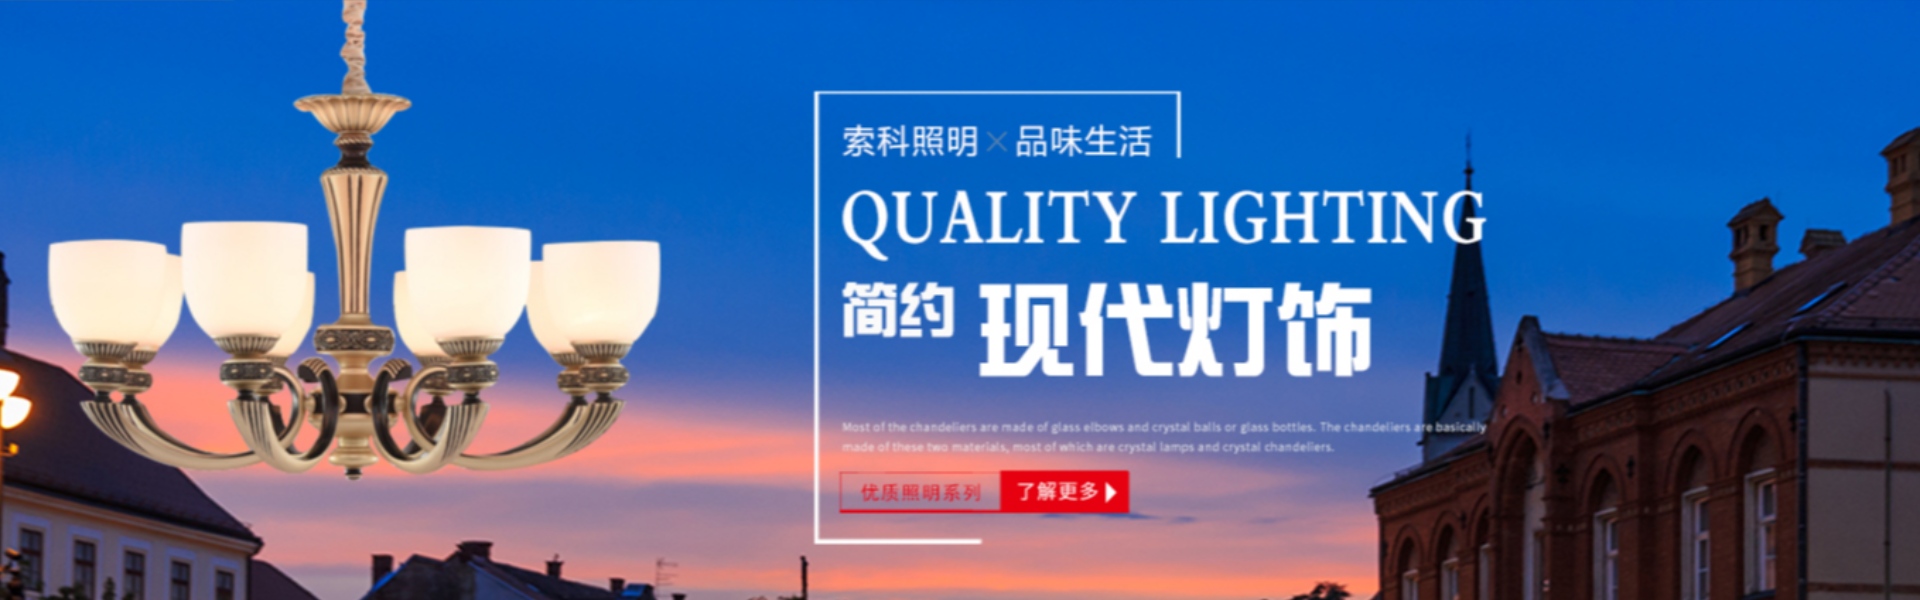 chiếu sáng gia đình, chiếu sáng ngoài trời, chiếu sáng mặt trời,Zhongshan Suoke Lighting Electric Co., Ltd.